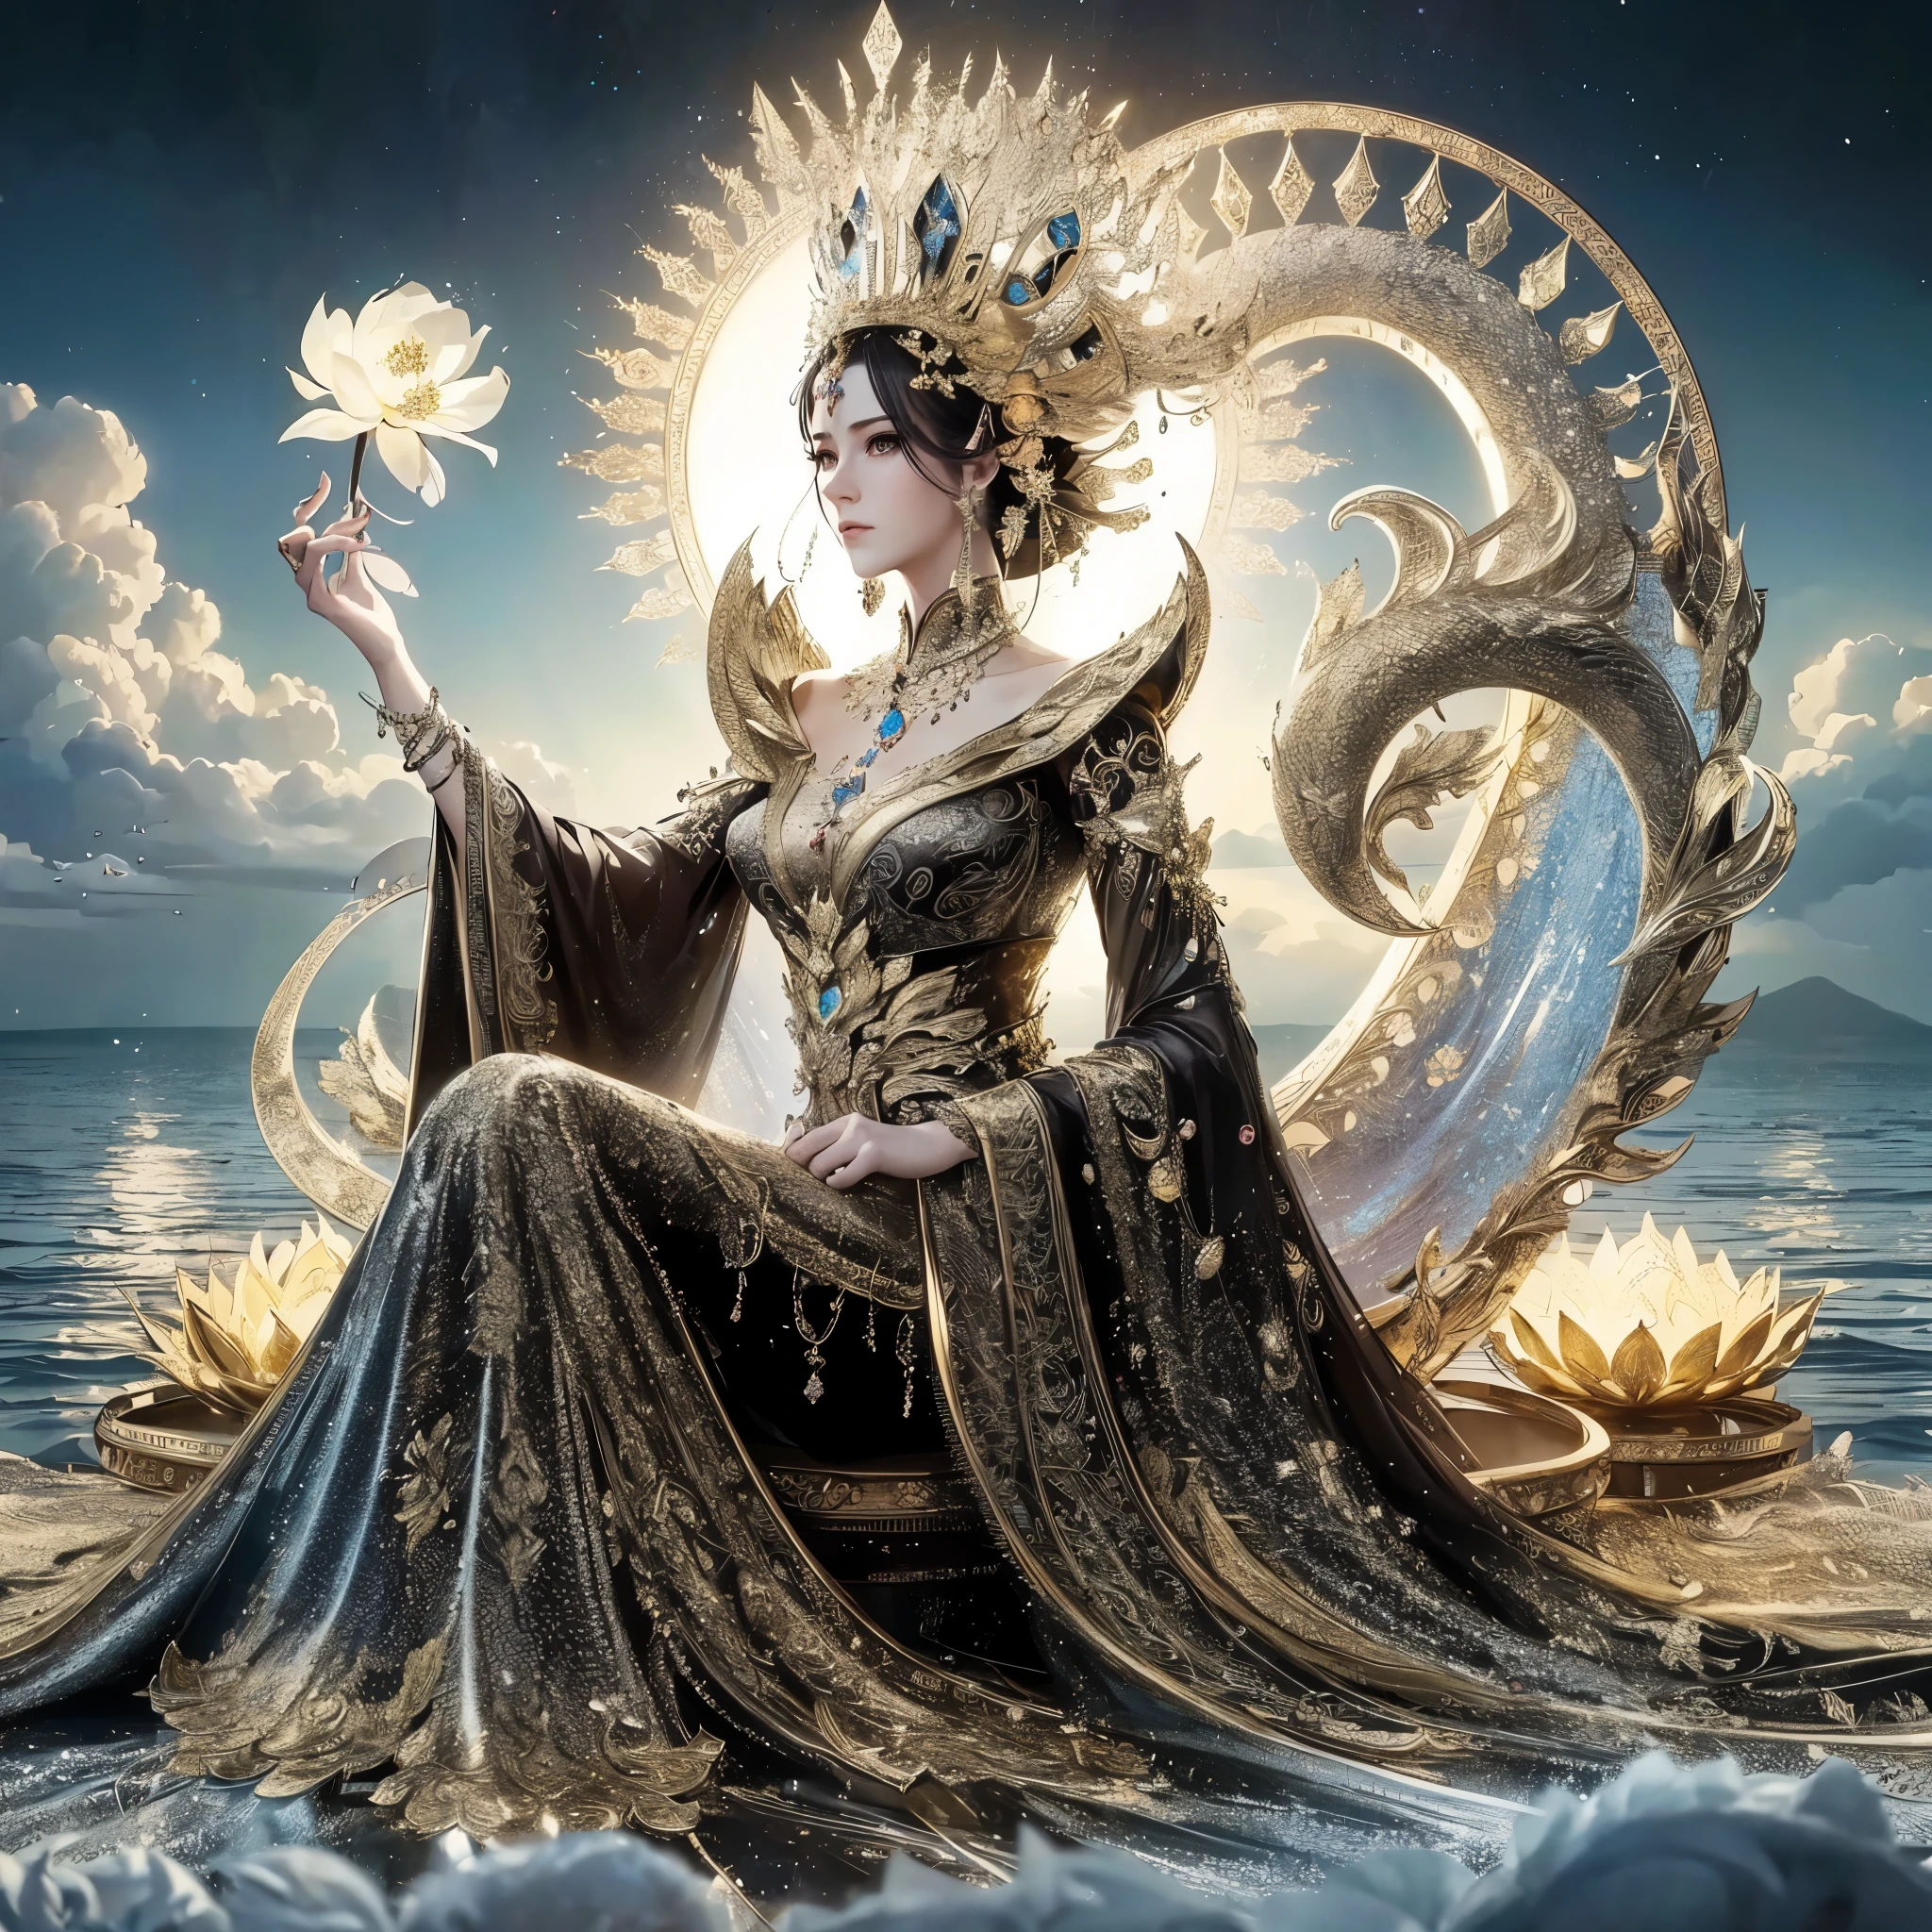 امرأة ذات صدر ضخم تجلس على العرش وفي يدها زهرة لوتس, إمبراطورة الخيال الجميلة, ((إمبراطورة الخيال الجميلة)), أميرة اللوتس المذهبة, ملكة البحر مو يانلينغ, إلهة. تفاصيل عالية للغاية, a stunning portrait of a إلهة, celestial إلهة, extremely detailed إلهة shot, 3 d إلهة portrait, portrait of a beautiful إلهة, يجلس على العرش المعقد, تحفة, أفضل جودة:1.2),,(8 كيلو,دقة عالية,صورة خام,حقيقي,photo-حقيقي:1.3),(نسيج الجلد مفصل,نسيج قماش مفصل,وجه مفصل جميل:1.25),إضاءة احترافية,رسم خرائط الفوتون,ضوء ناعم جميل,الإشعاع,التقديم القائم على الجسد,com.raytracing, أسلوب تبادل لاطلاق النار النموذجي, أسلوب تبادل لاطلاق النار النموذجي, (extremely detailed CG unity 8 كيلو wallpaper), صورة كاملة للجسم لأجمل عمل فني في العالم,